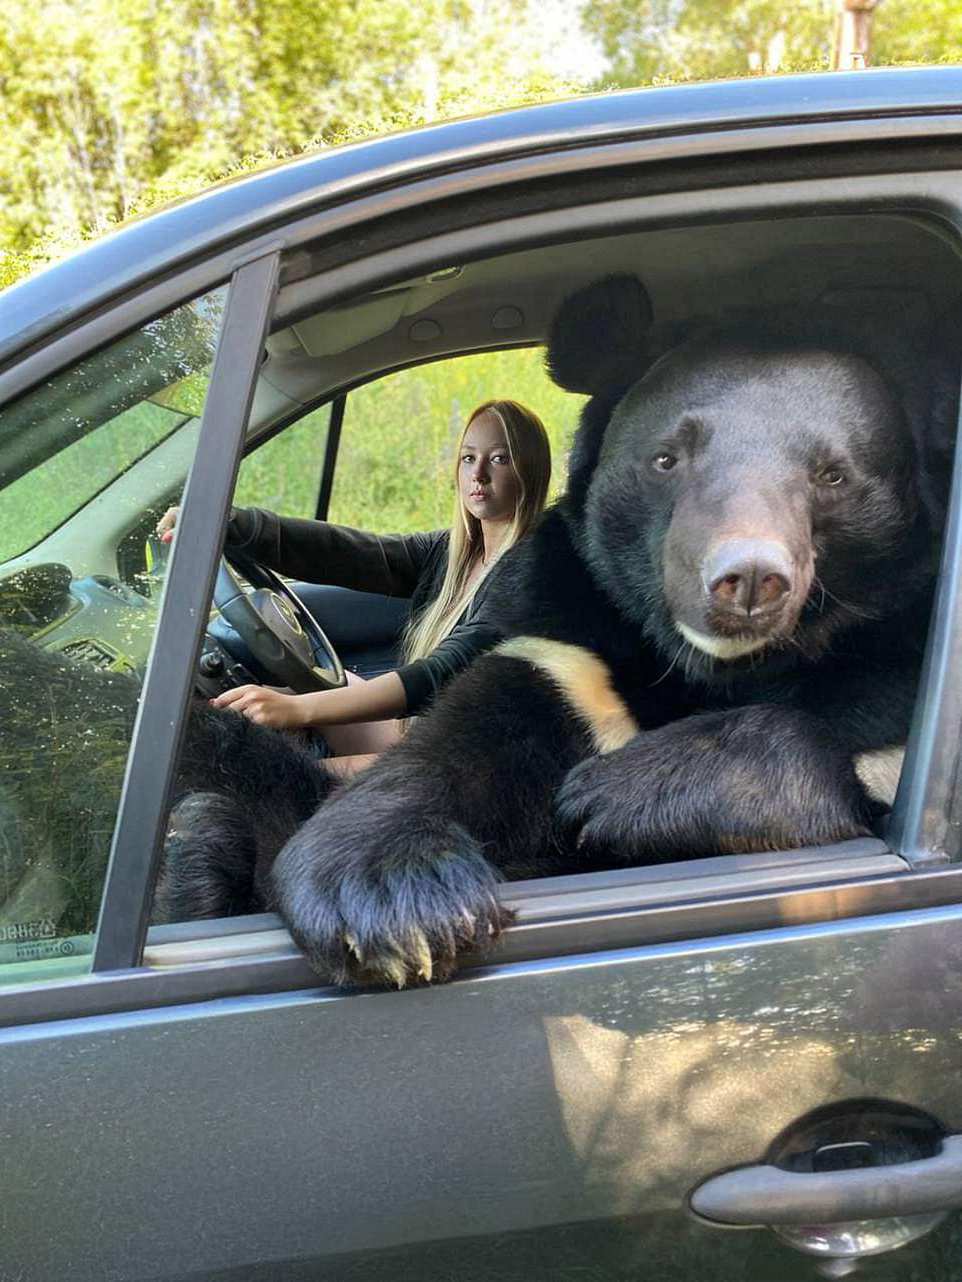 來兜風嗎？路邊車輛副駕竟「探出一頭熊」　主人笑叮囑：要繫安全帶～